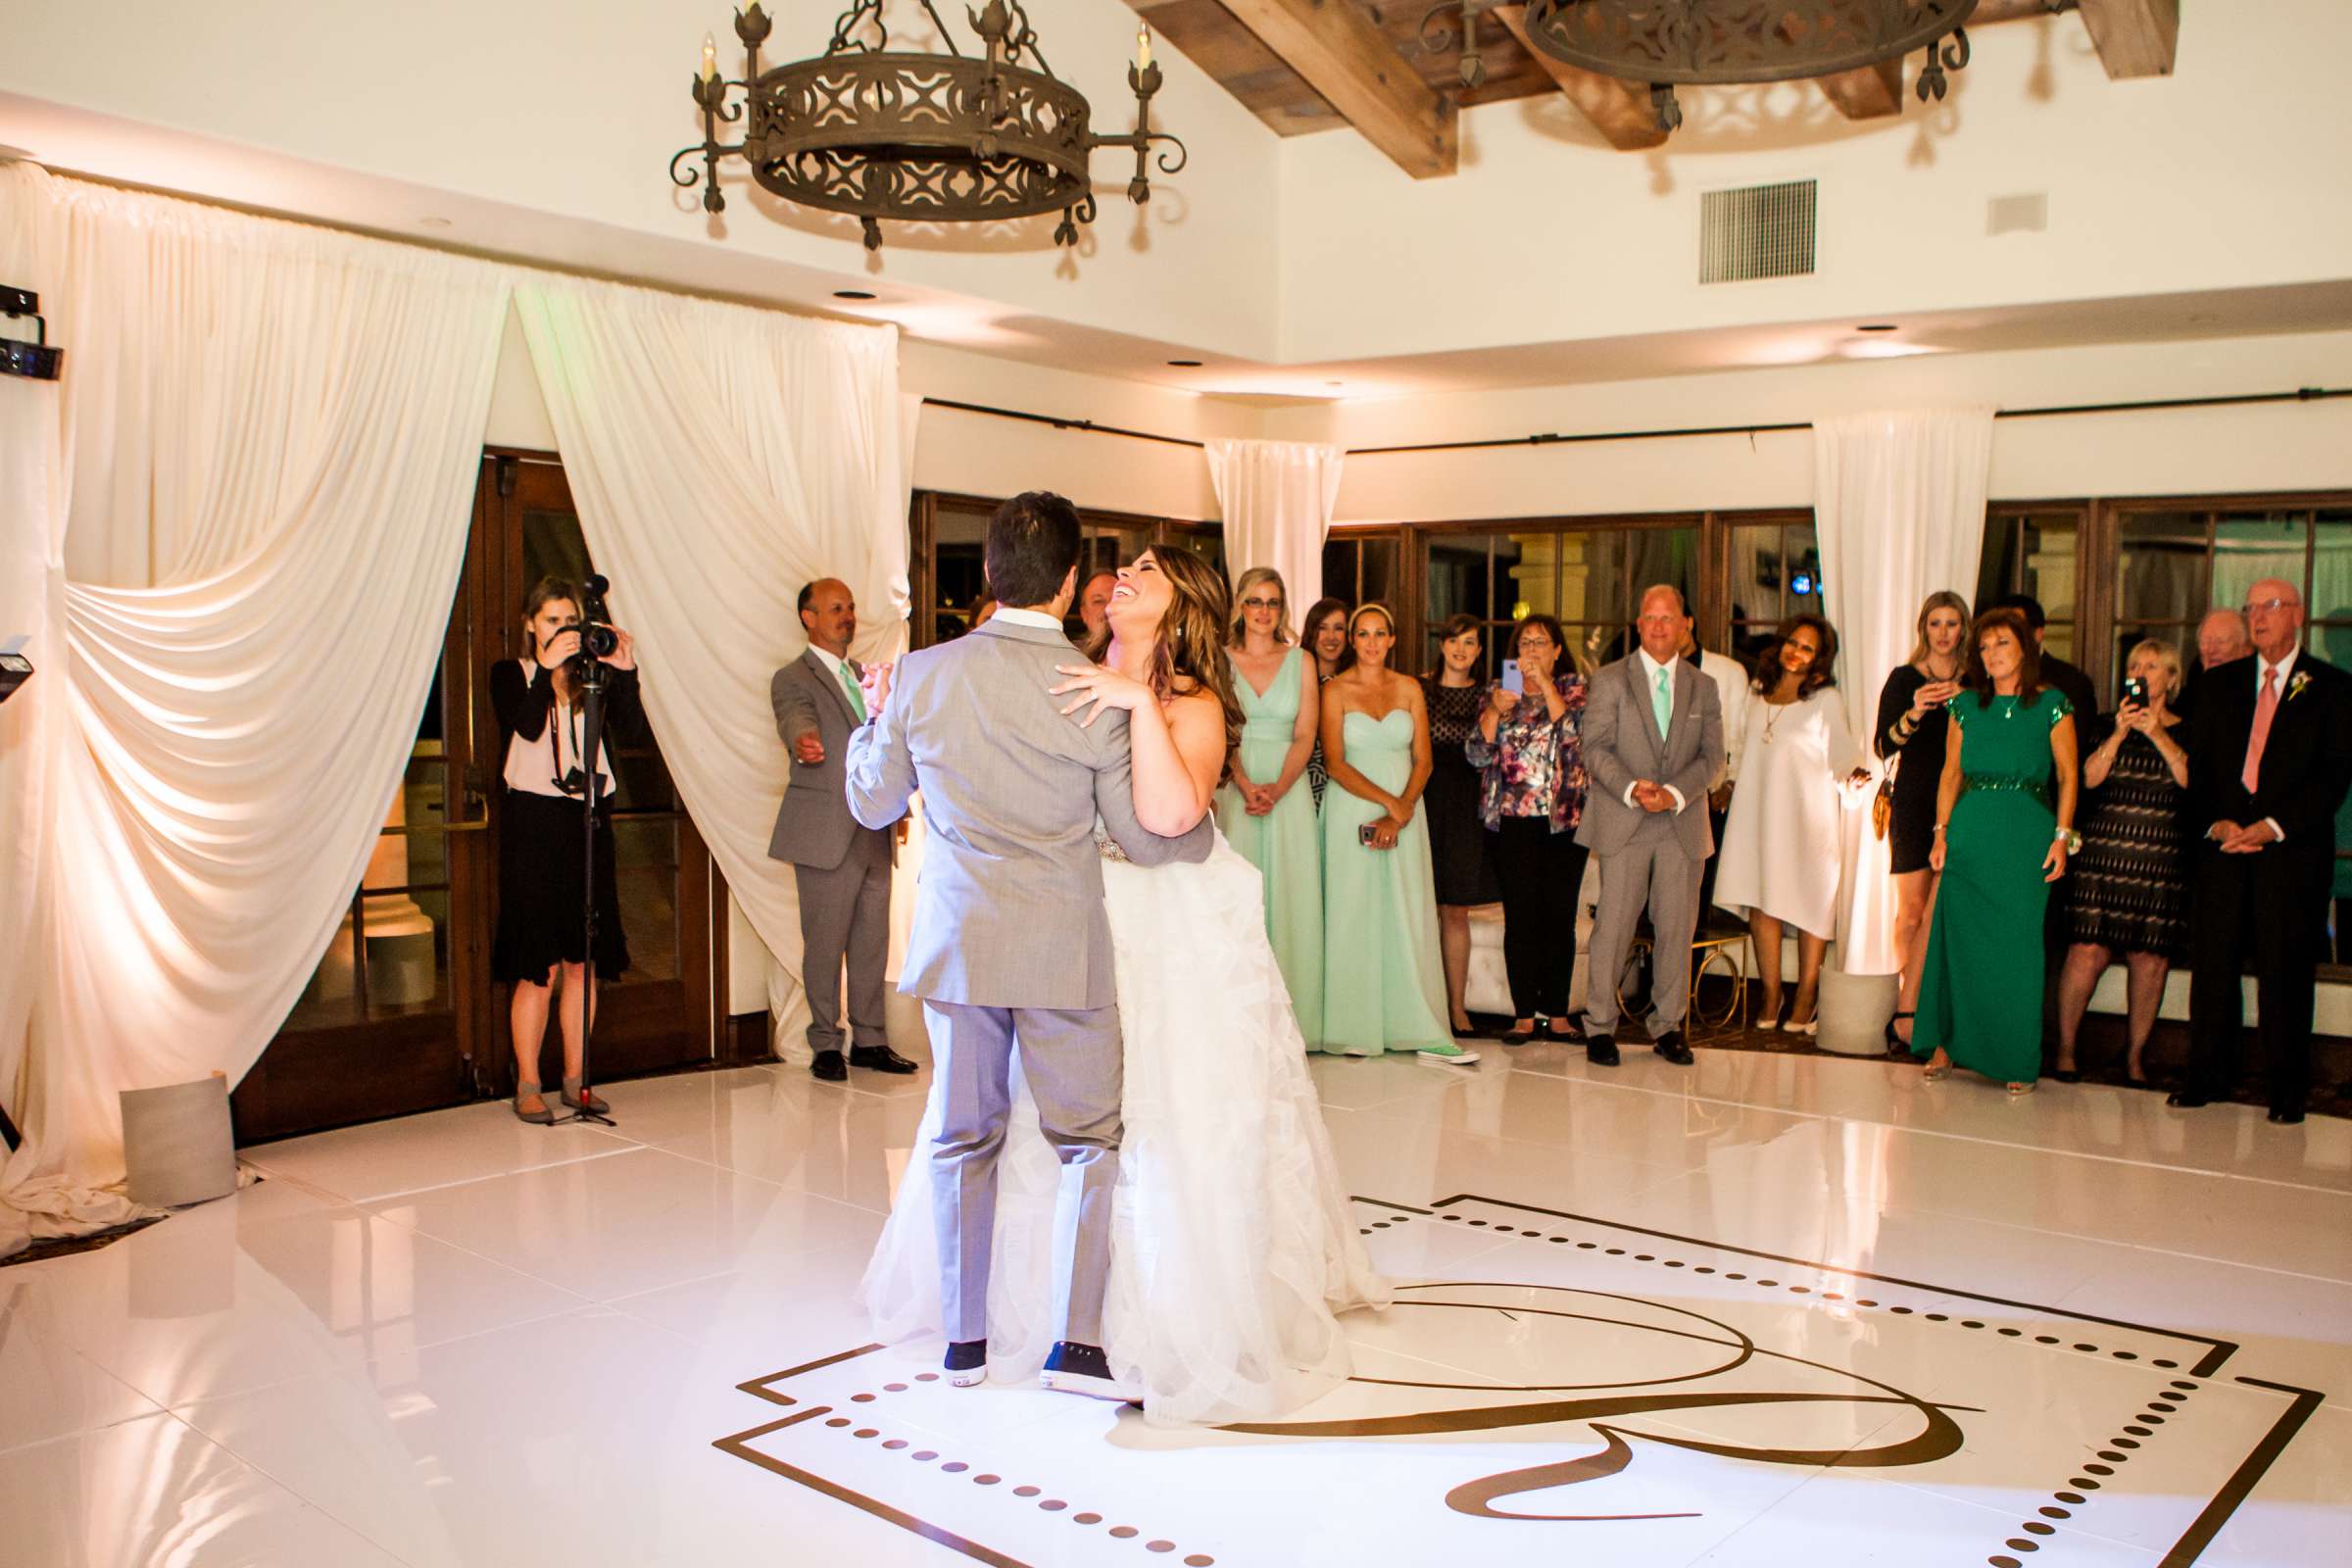 Rancho Santa Fe Golf Club Wedding coordinated by Monarch Weddings, Carolynn and Jon Wedding Photo #83 by True Photography